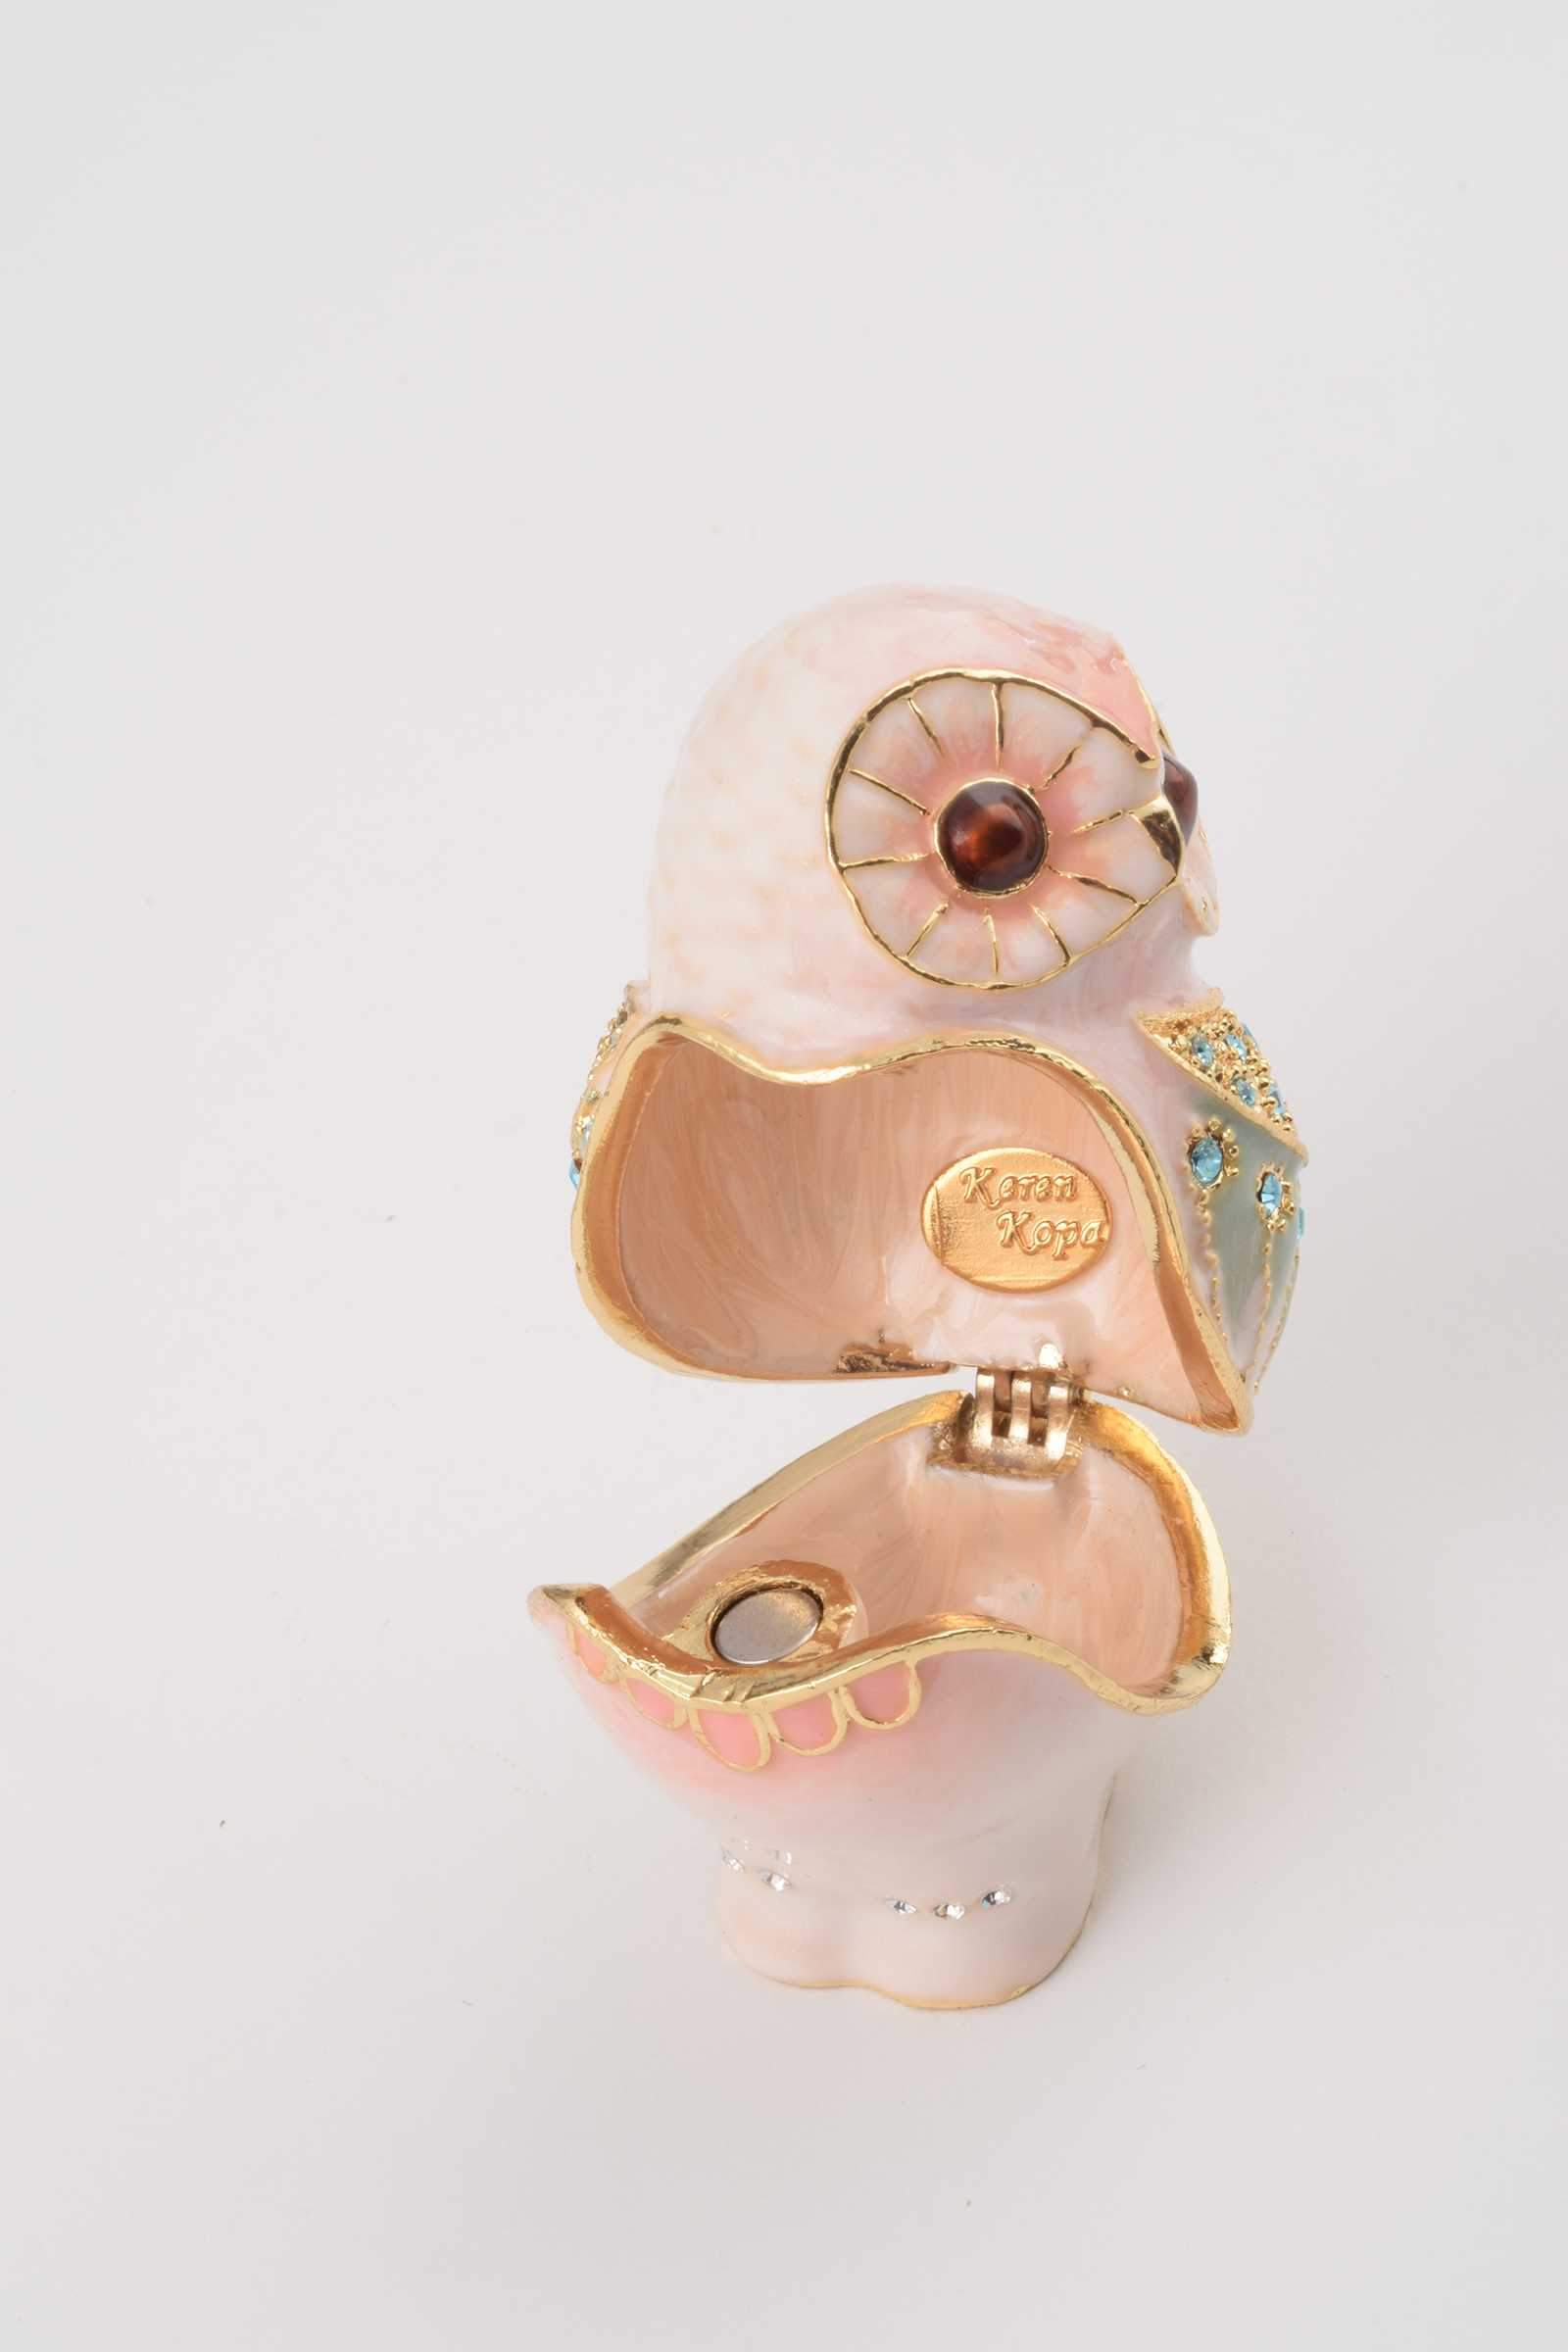 Keren Kopal Pink Owl  46.50